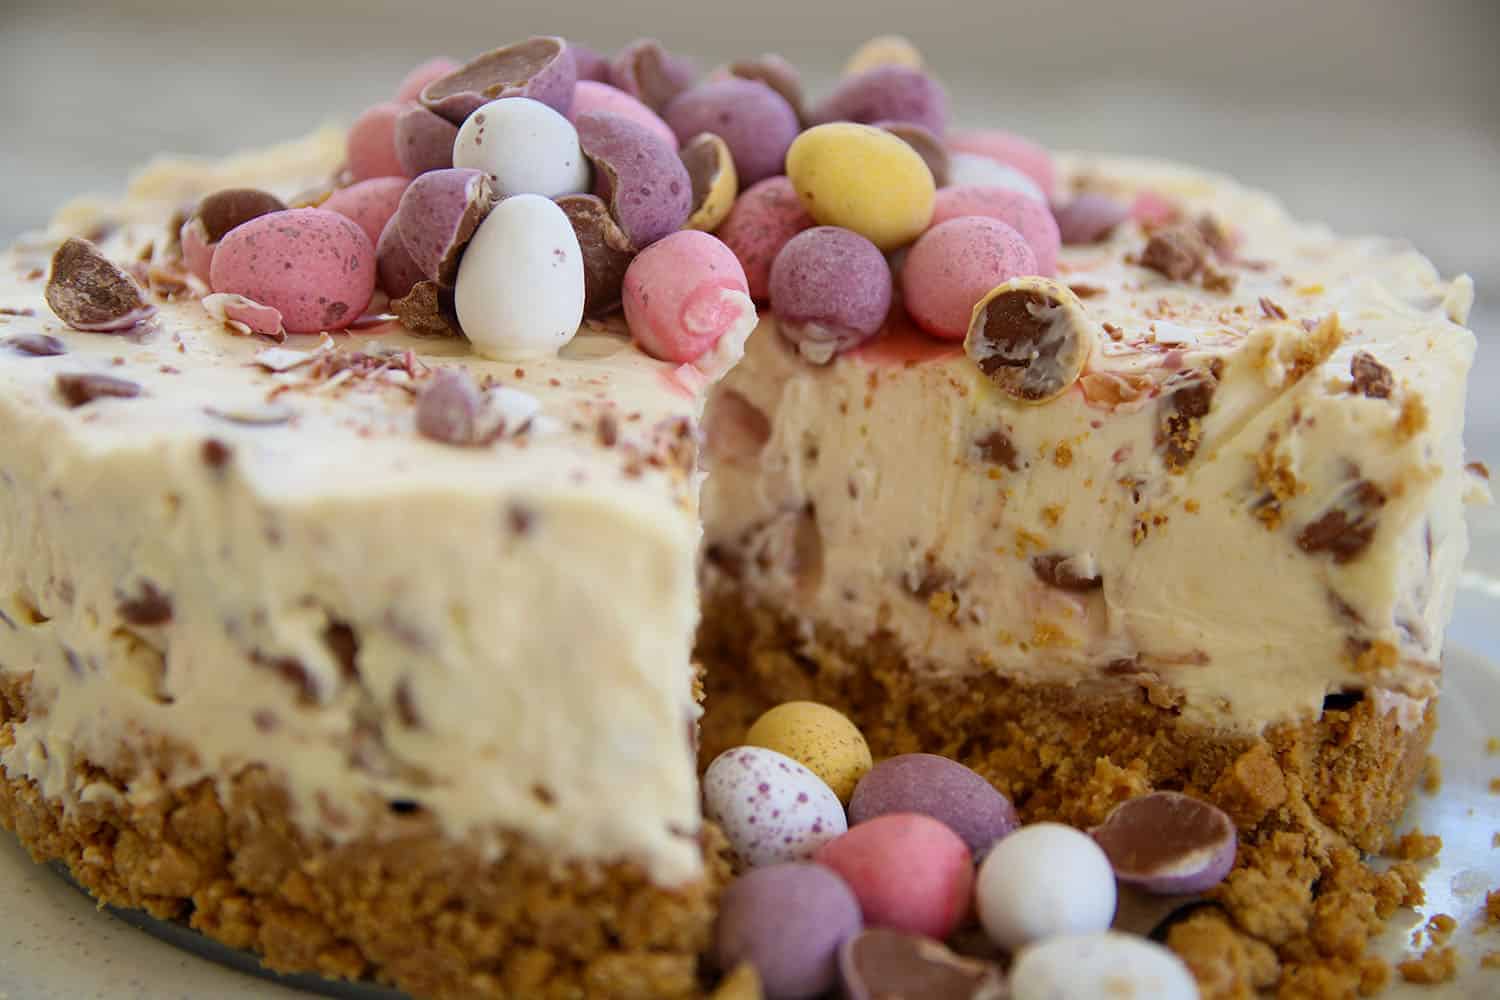 Lizzie Acker's Gluten-Free Easter Bundty Cake Recipe